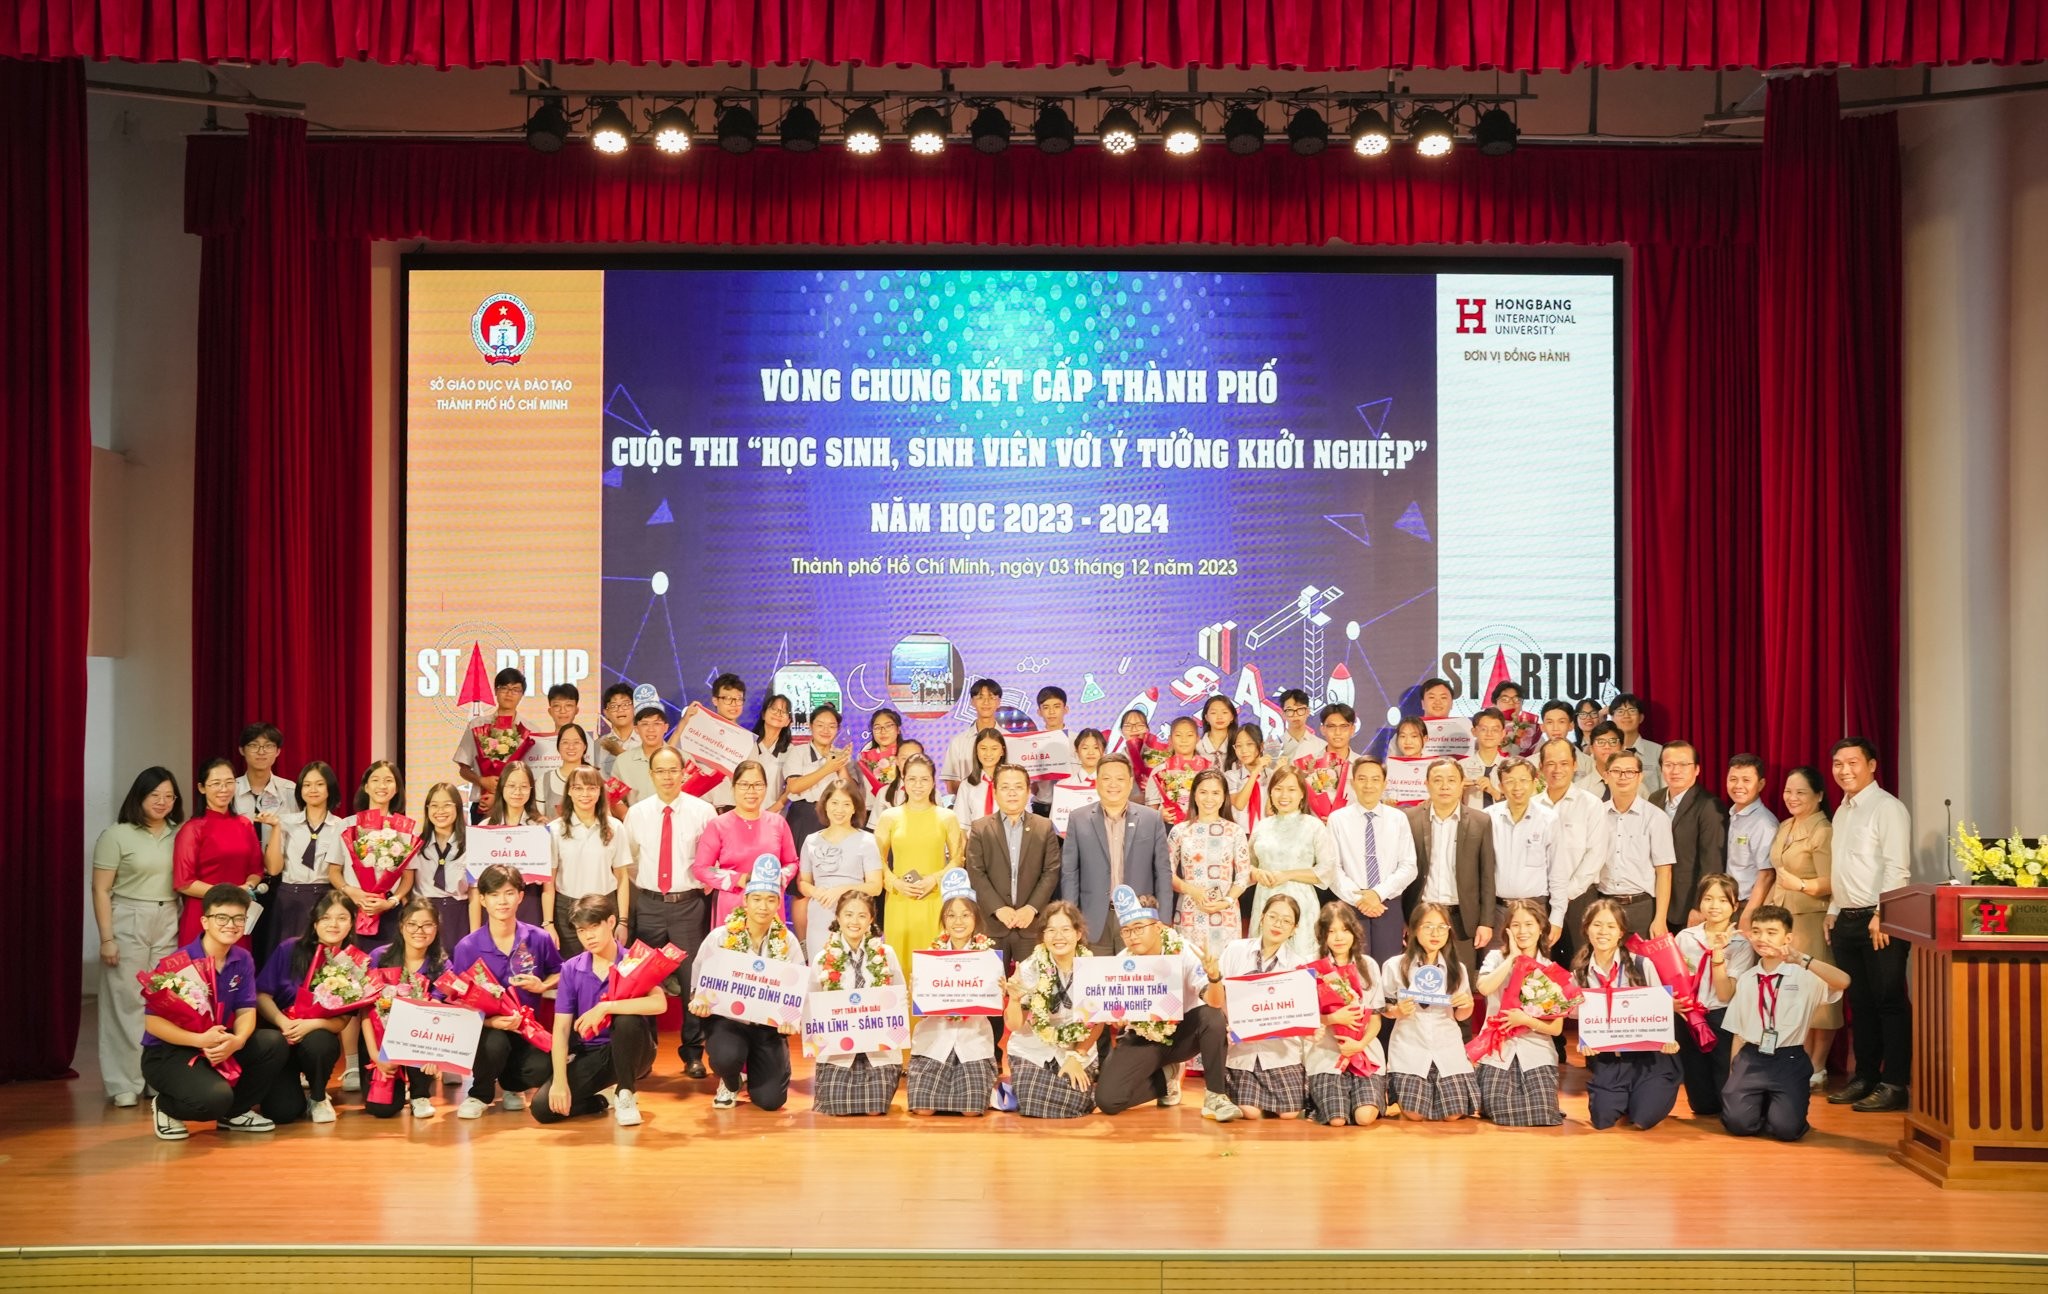 Trường THPT Trần Văn Giàu đạt giải Nhất cuộc thi “Học sinh, sinh viên với ý tưởng khởi nghiệp” TP.HCM 2023